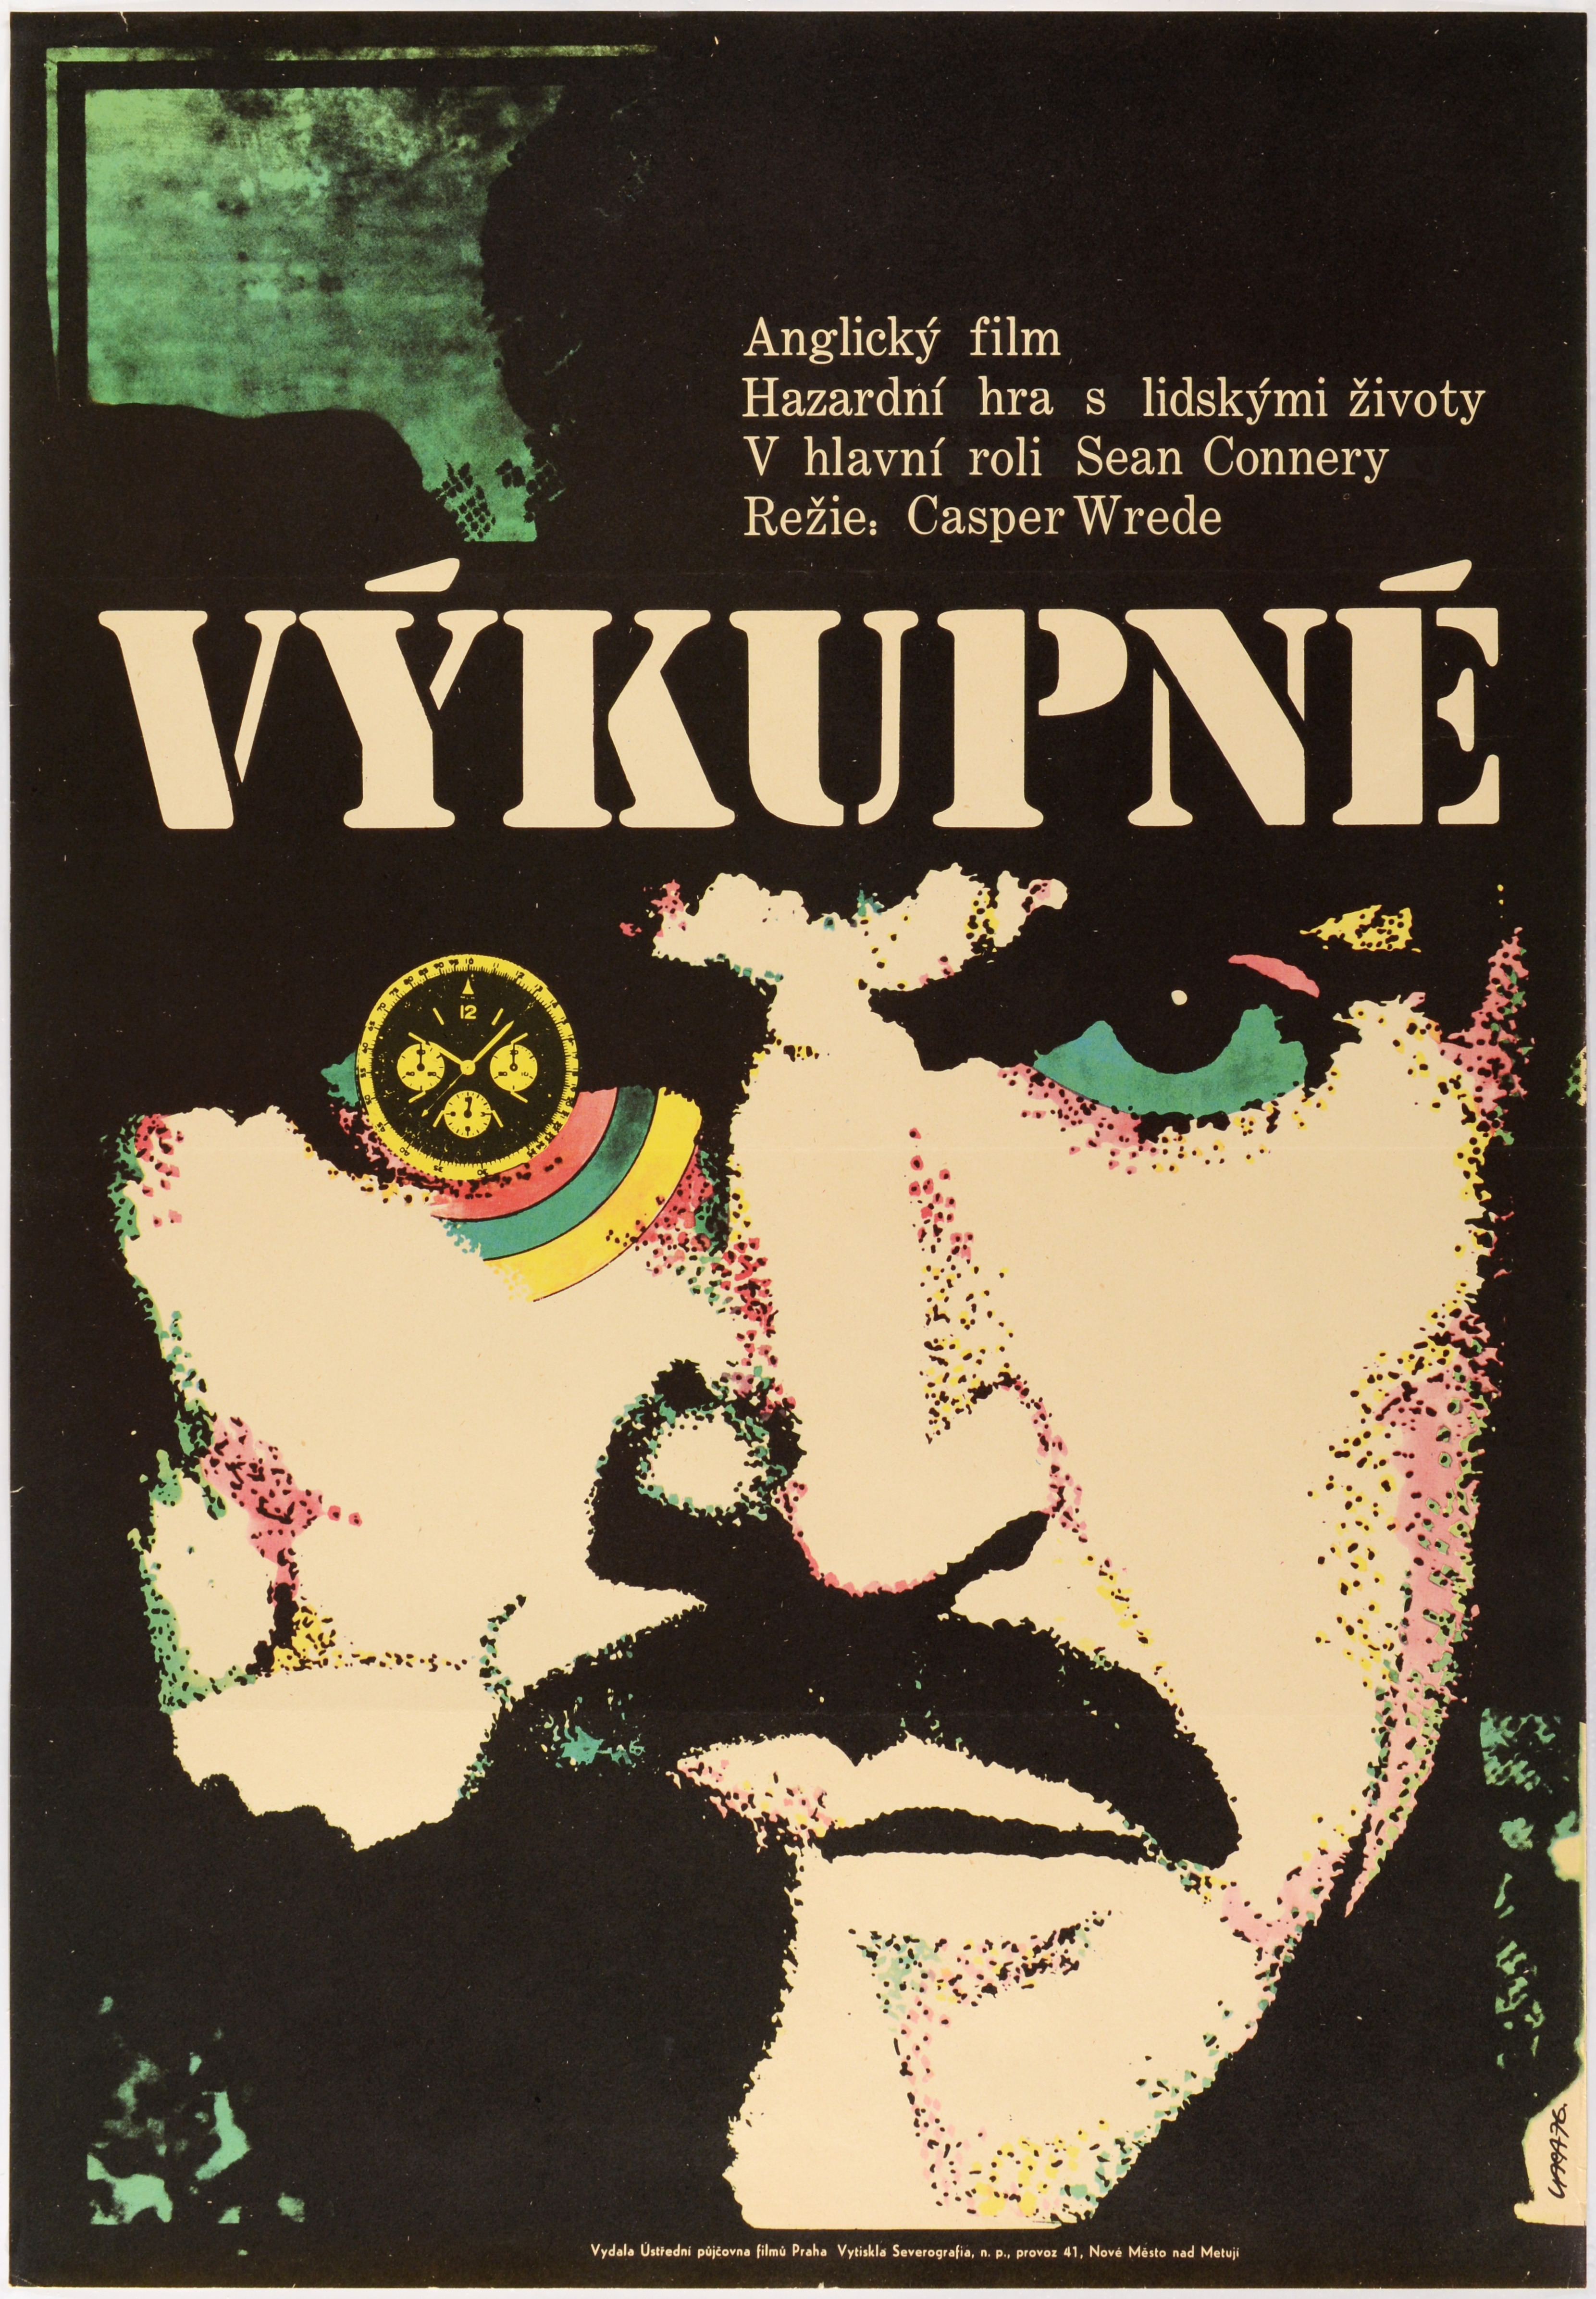 VÝKUPNÉ (RANSOM) by Karel Vaca, 1976